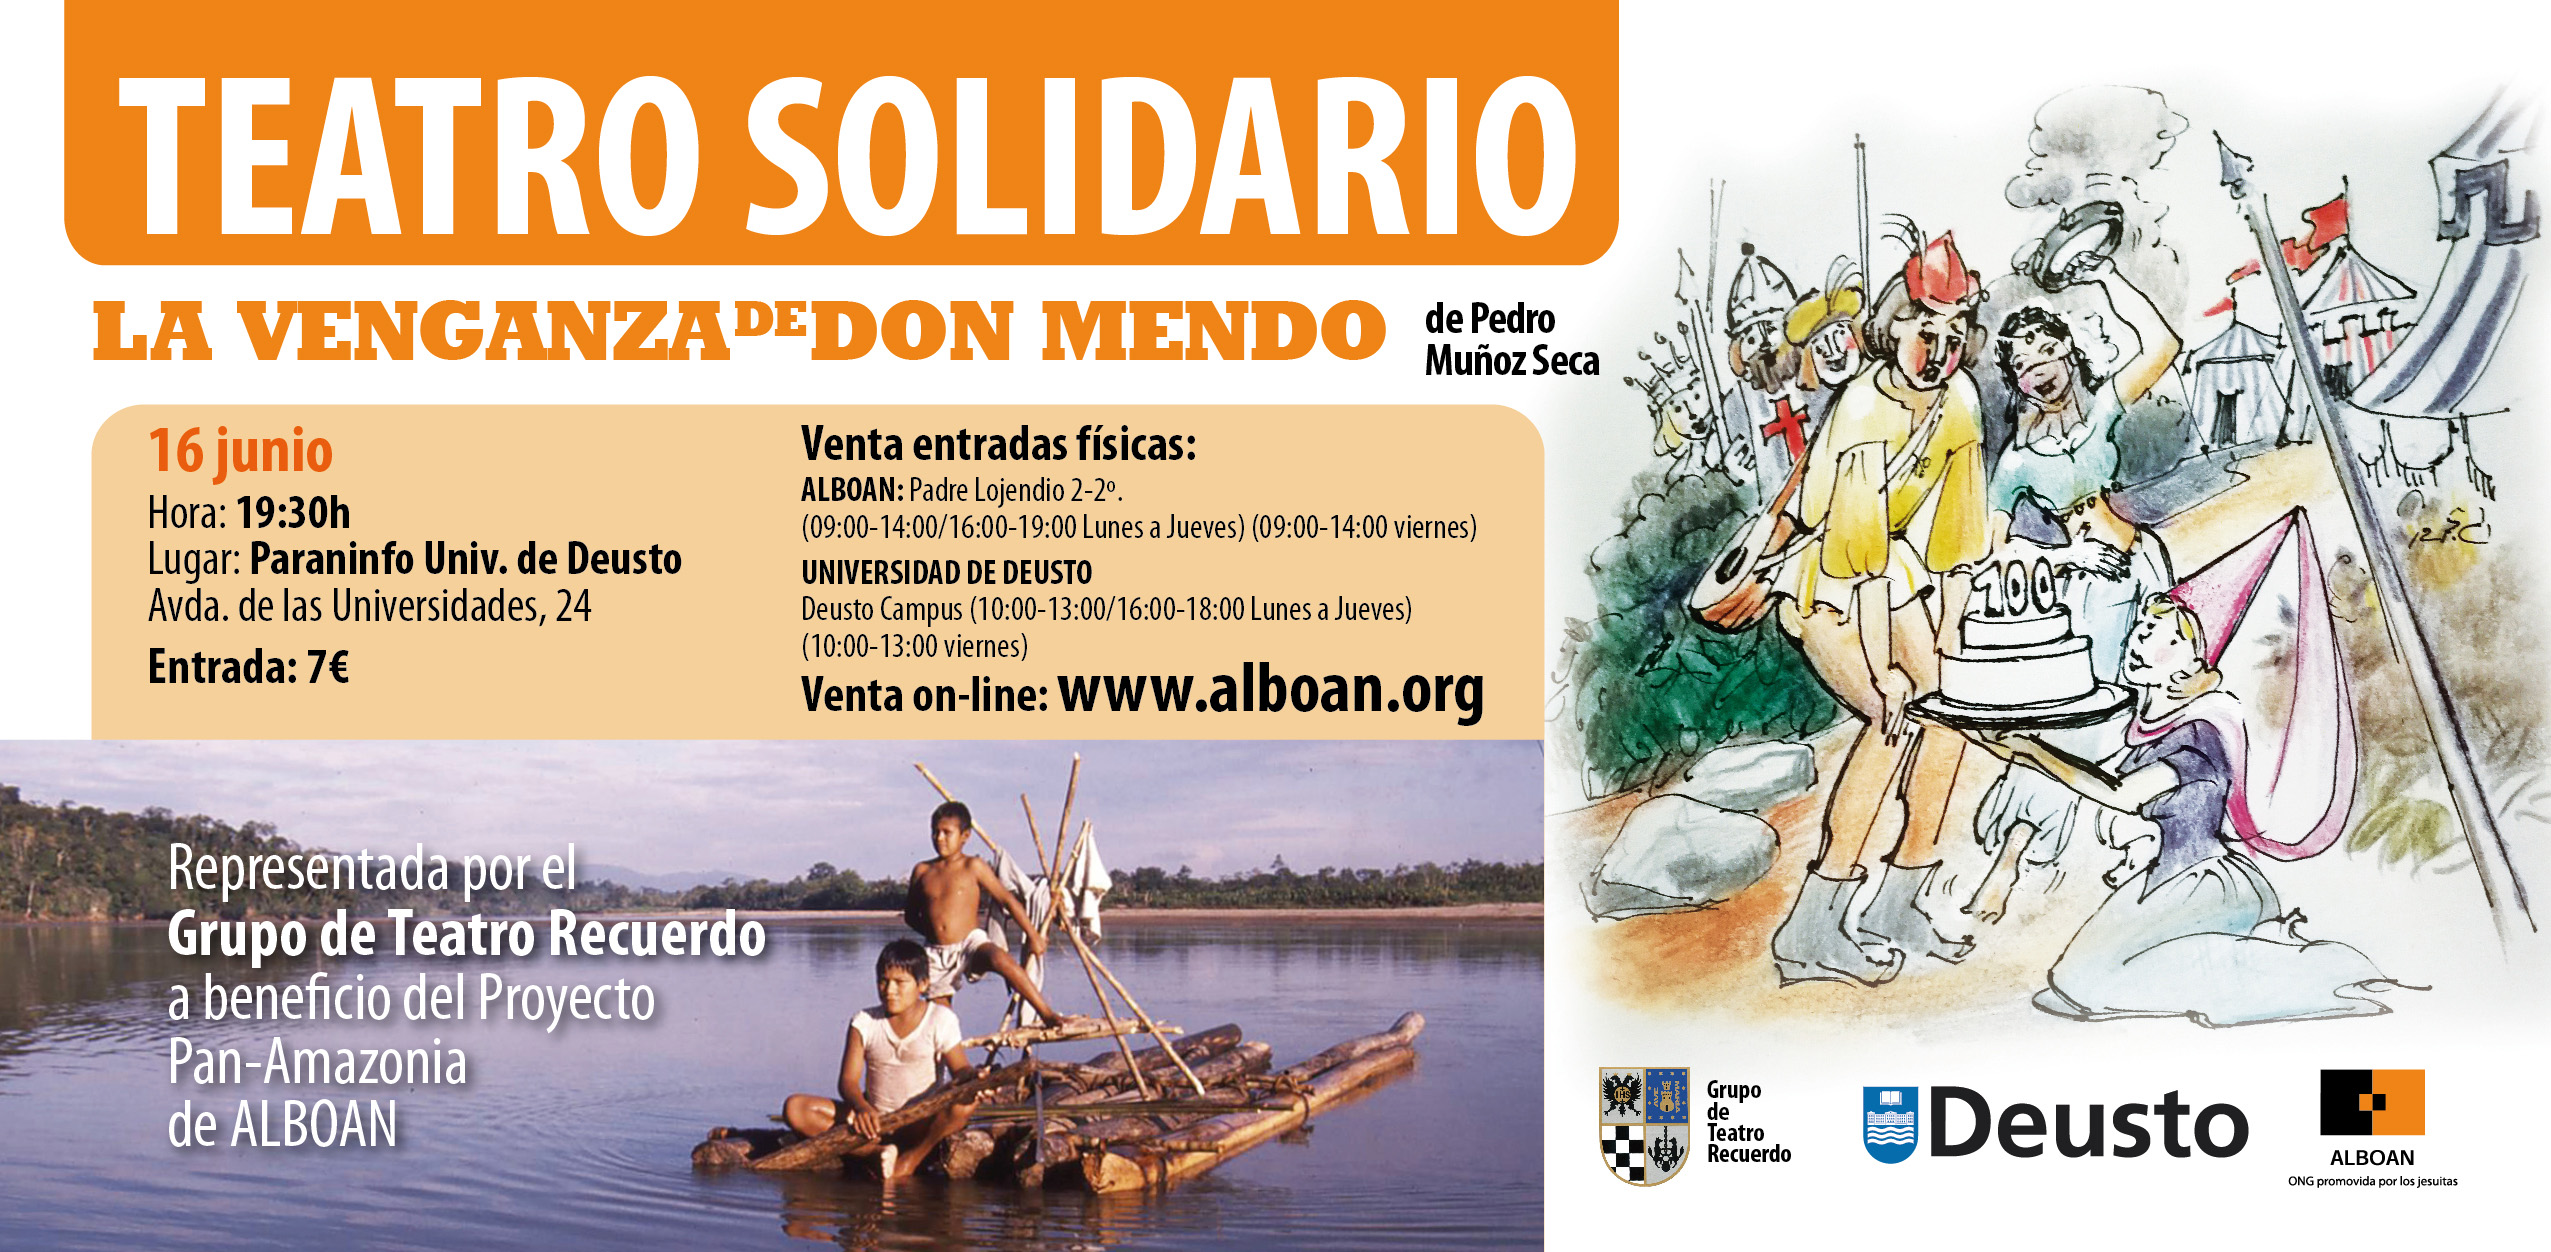 16 de junio. Teatro solidario en la Universidad de Deusto, Bilbao